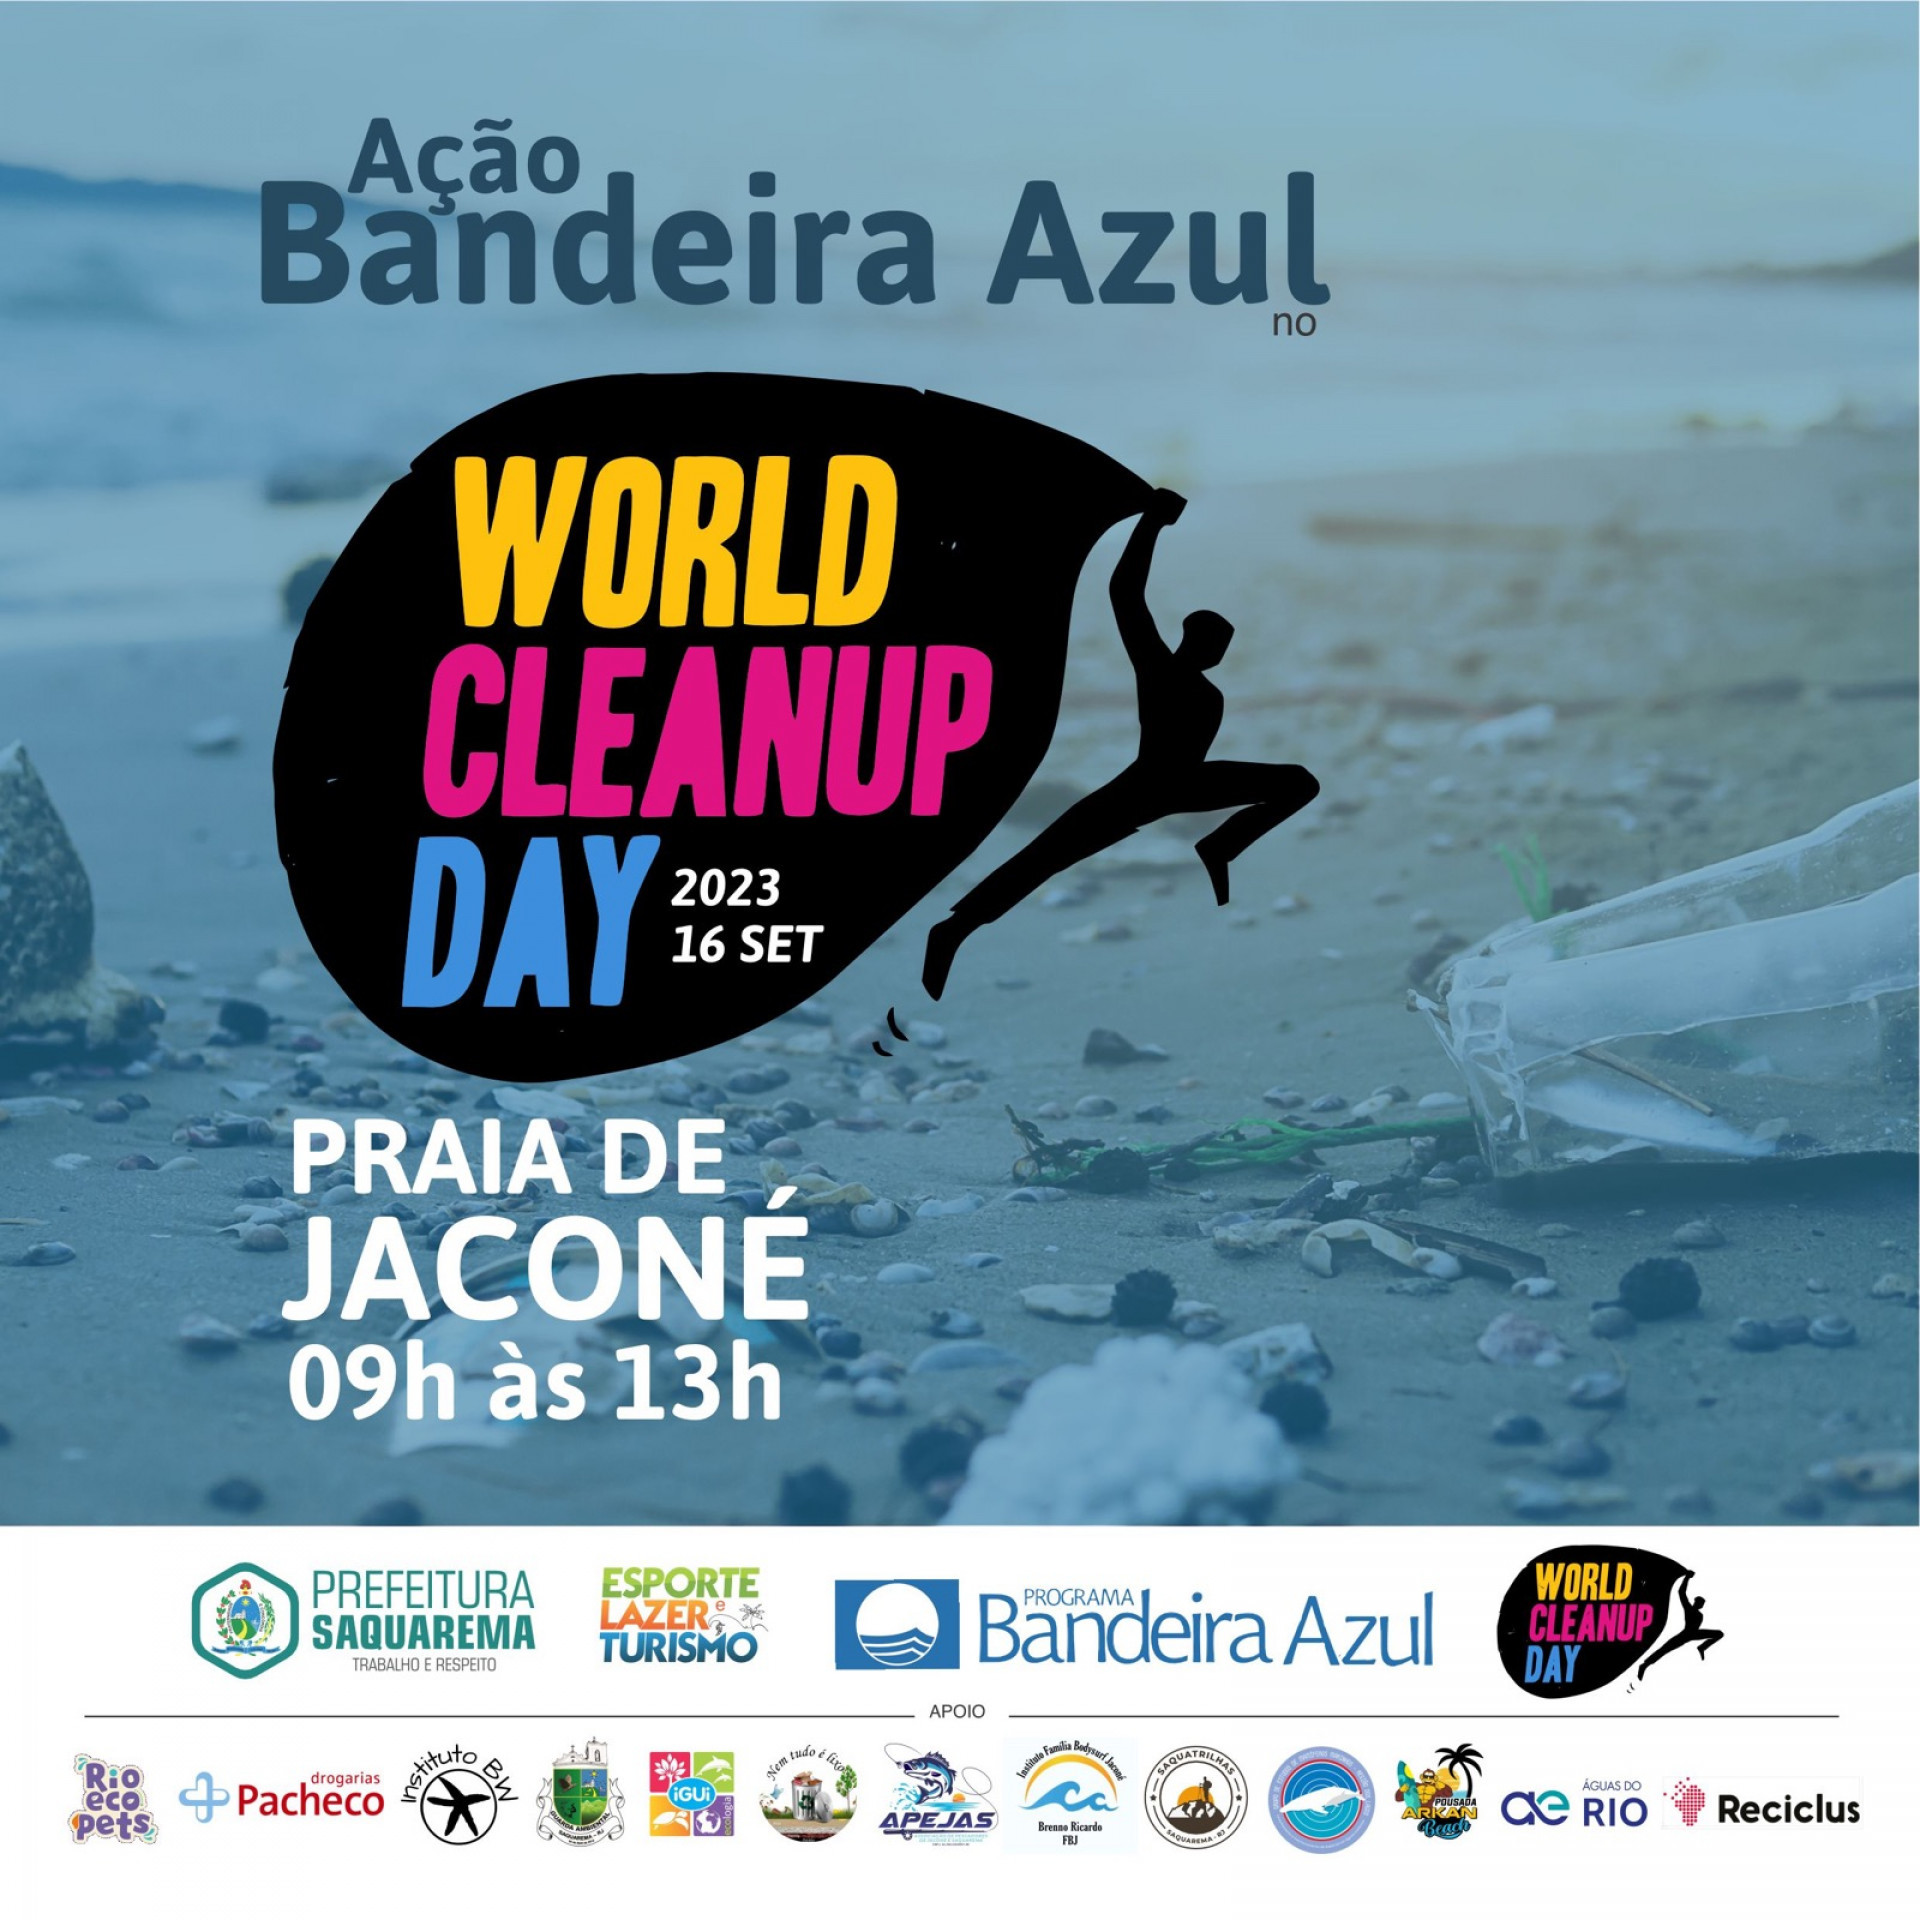  Clean Up Day 2023, mais conhecido como Dia Mundial da Limpeza, será realizado na Praia de Jaconé - Divulgação